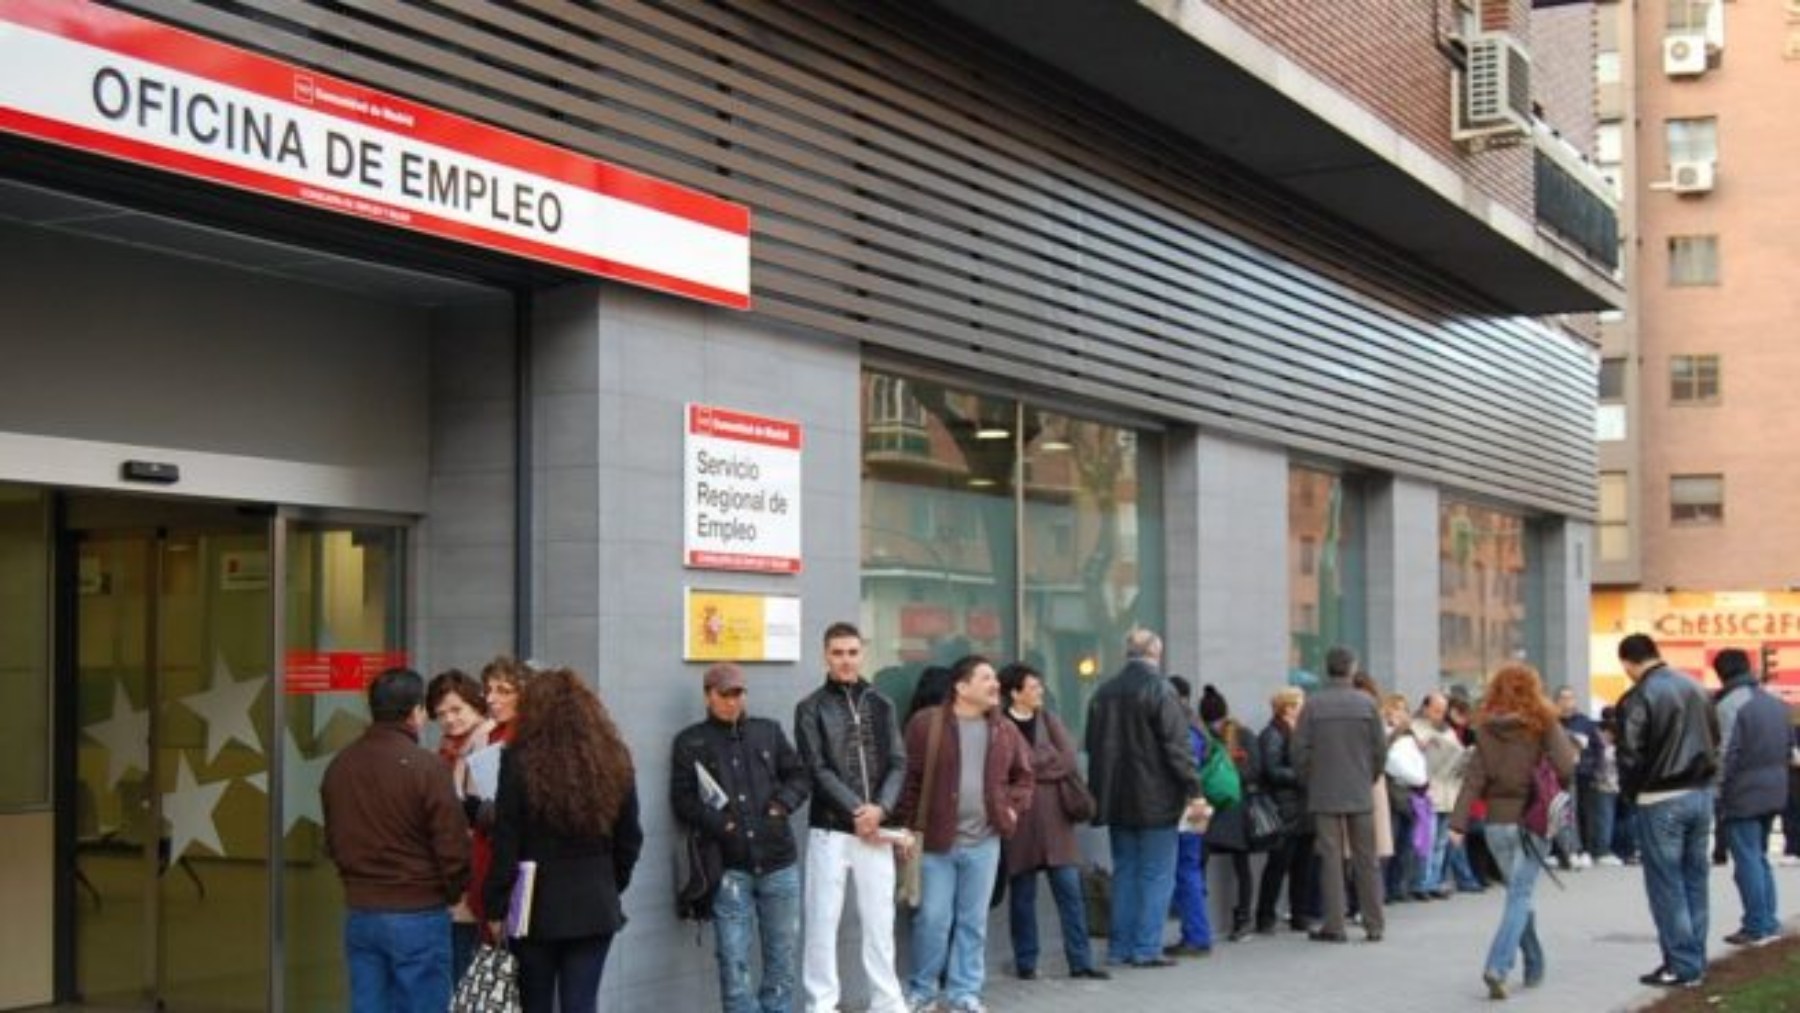 Oficina de Empleo en España en una imagen de archivo